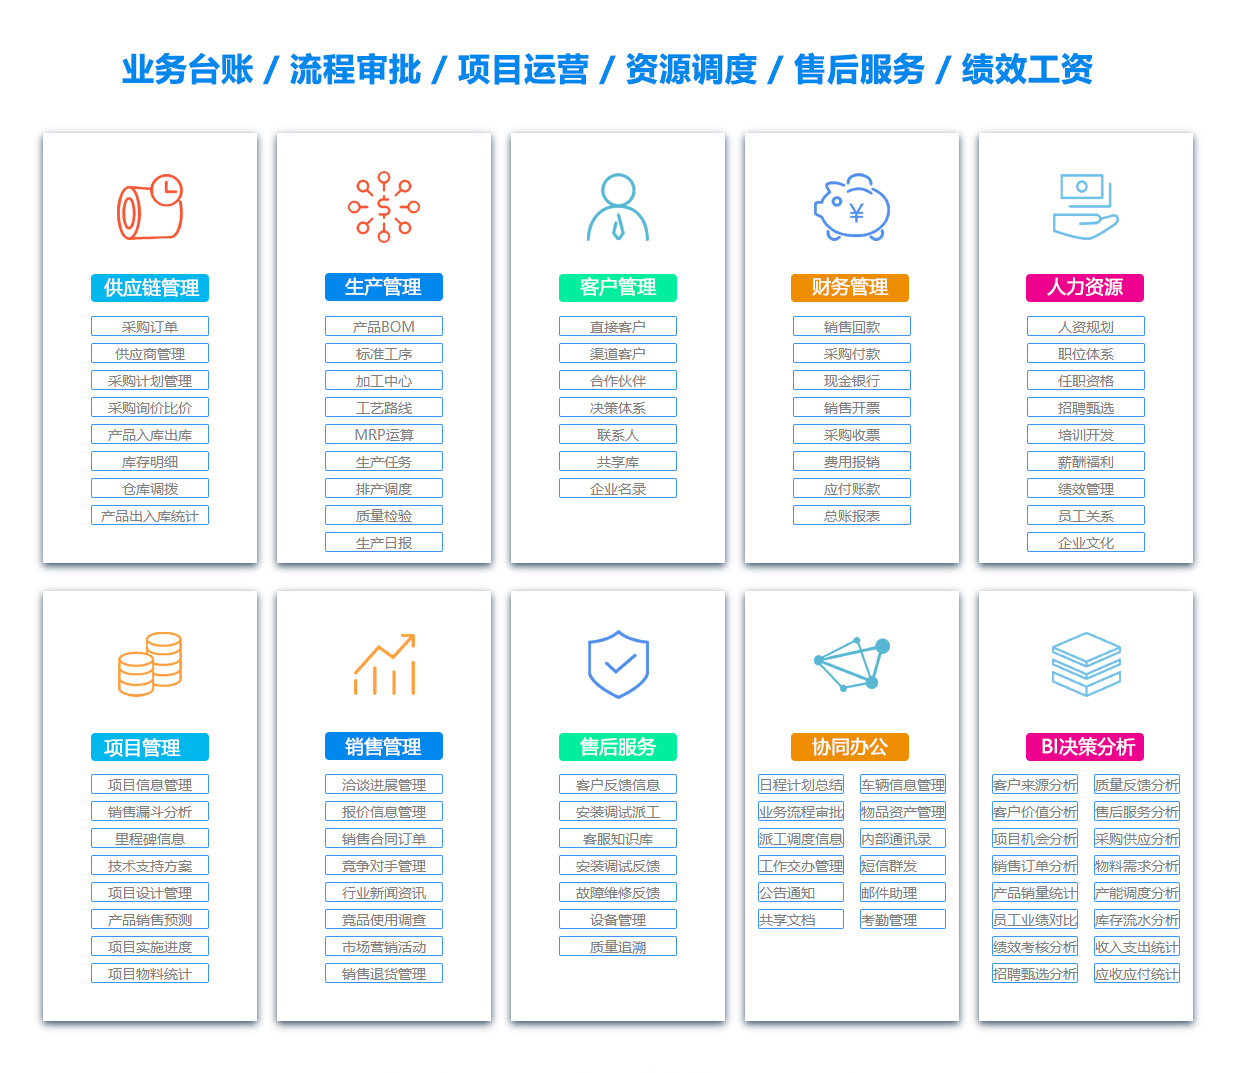 徐州PDM:产品数据管理系统